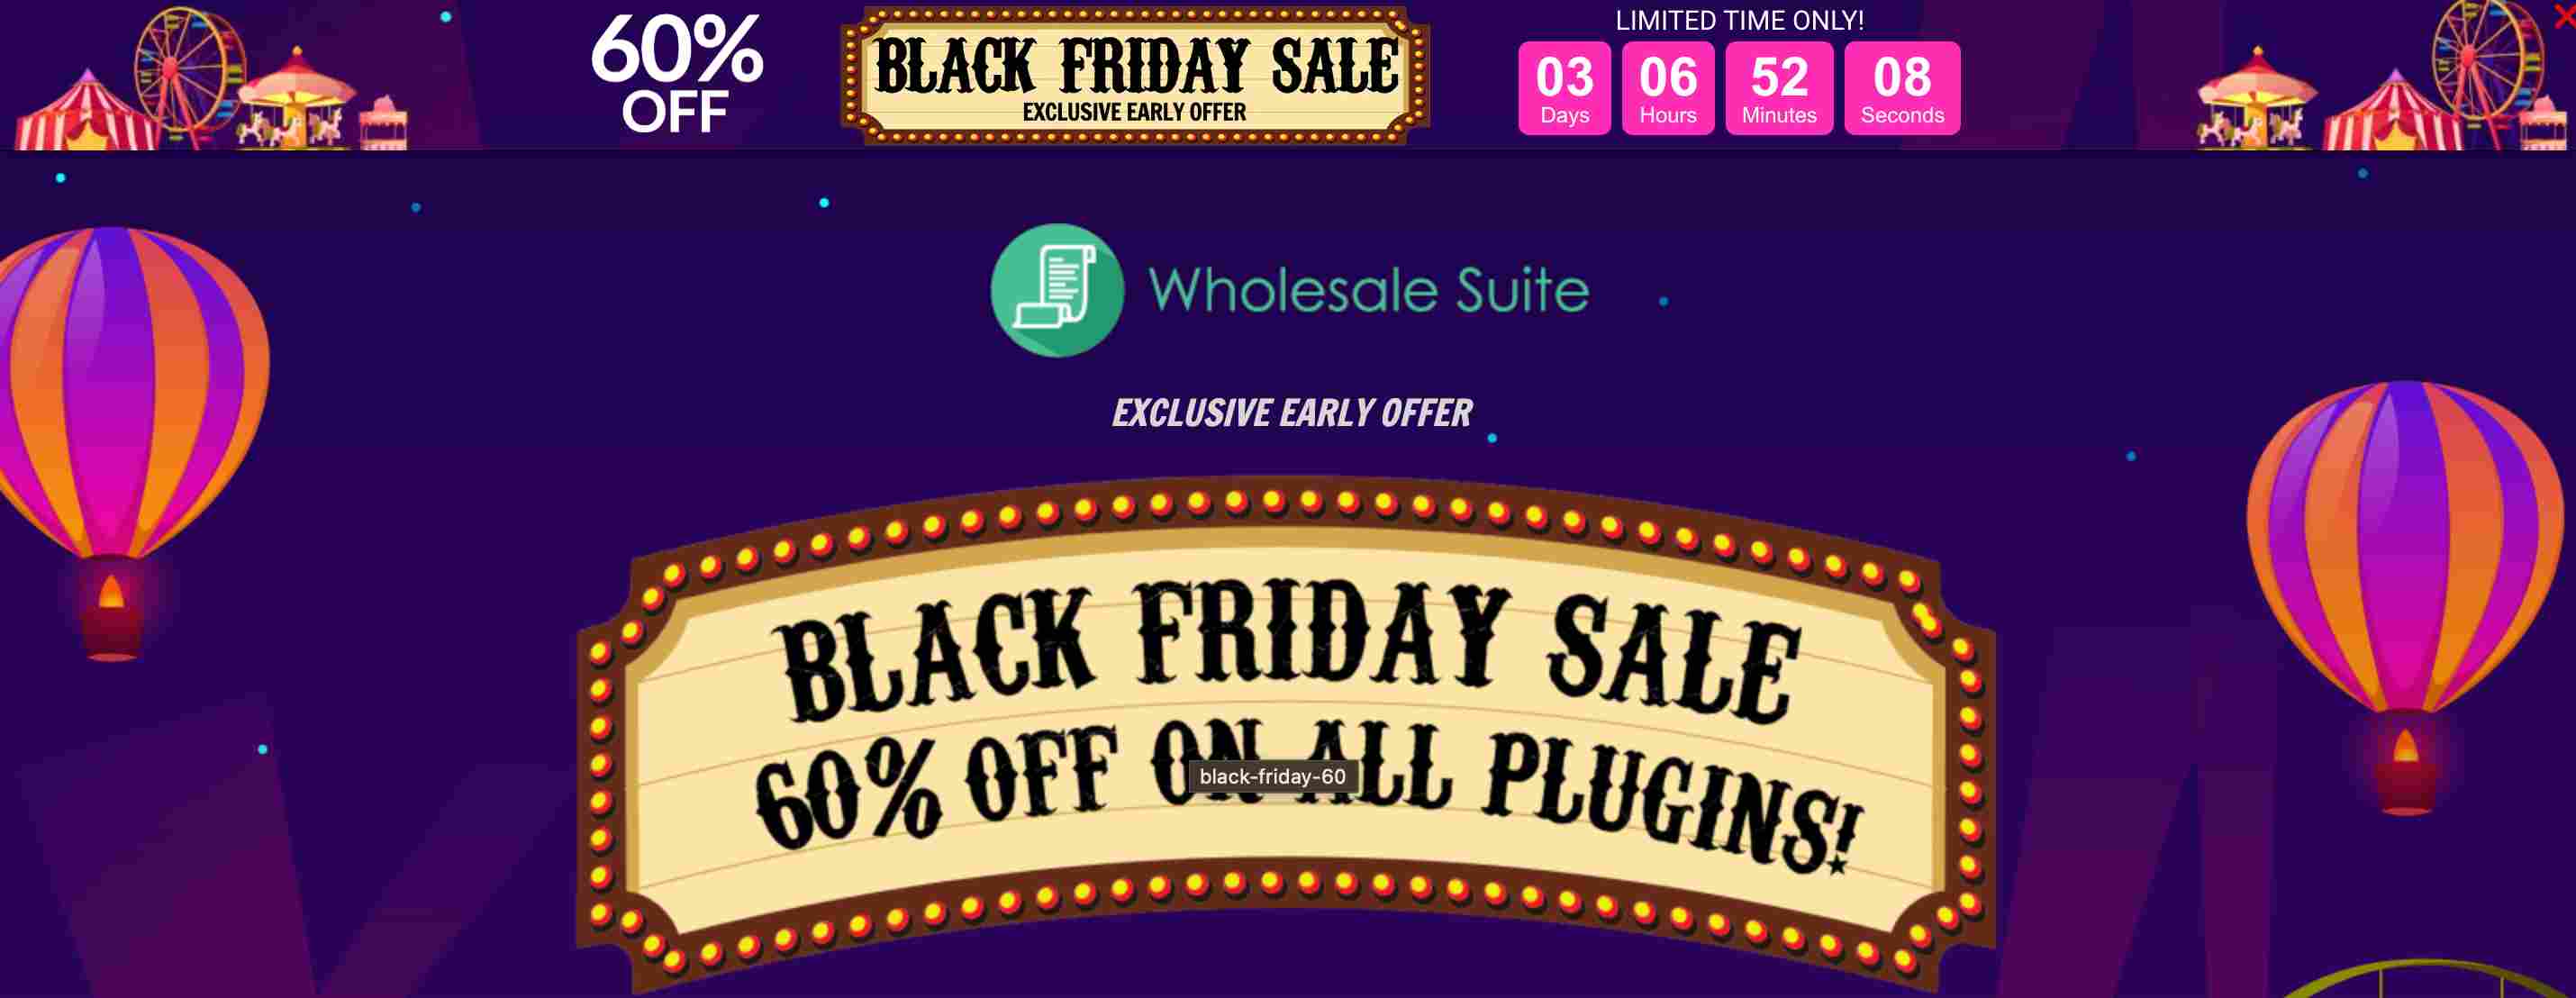 Black Friday Software deals: wholesale Suite